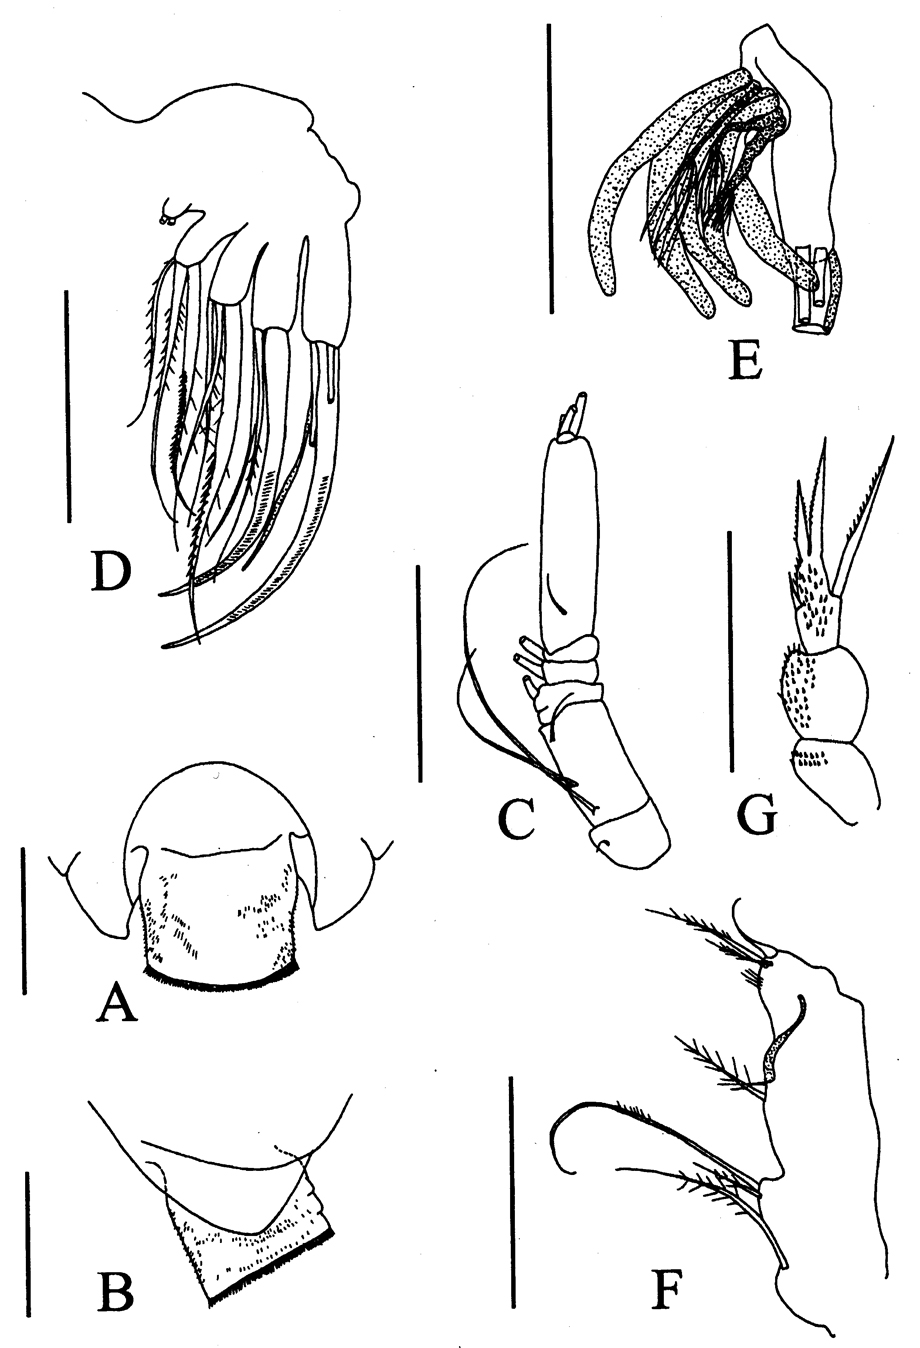 Species Byrathis sp. - Plate 1 of morphological figures